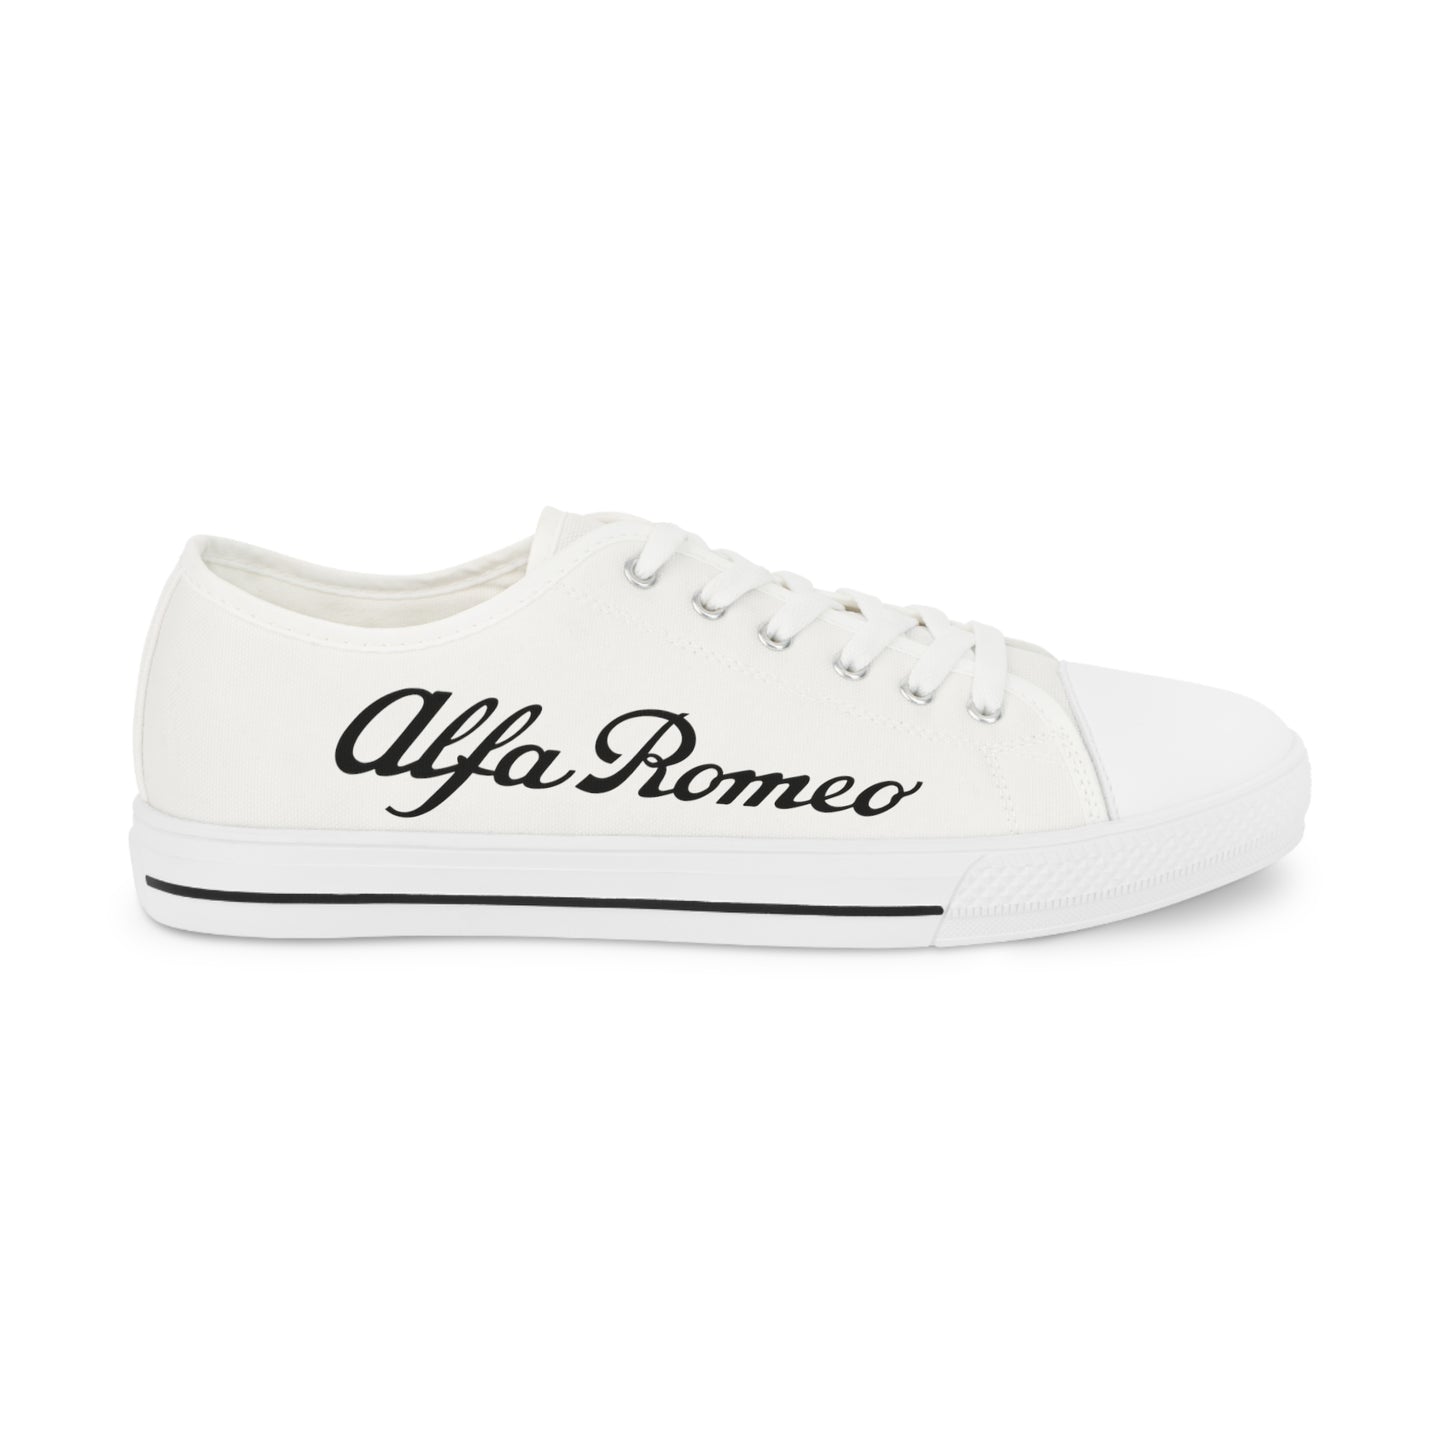 Alfa Romeo Script Low Top Canvas Sneaker - Calzado de hombre personalizable - Diseño cómodo y duradero - Perfecto para un viaje o fanáticos de zapatillas únicas